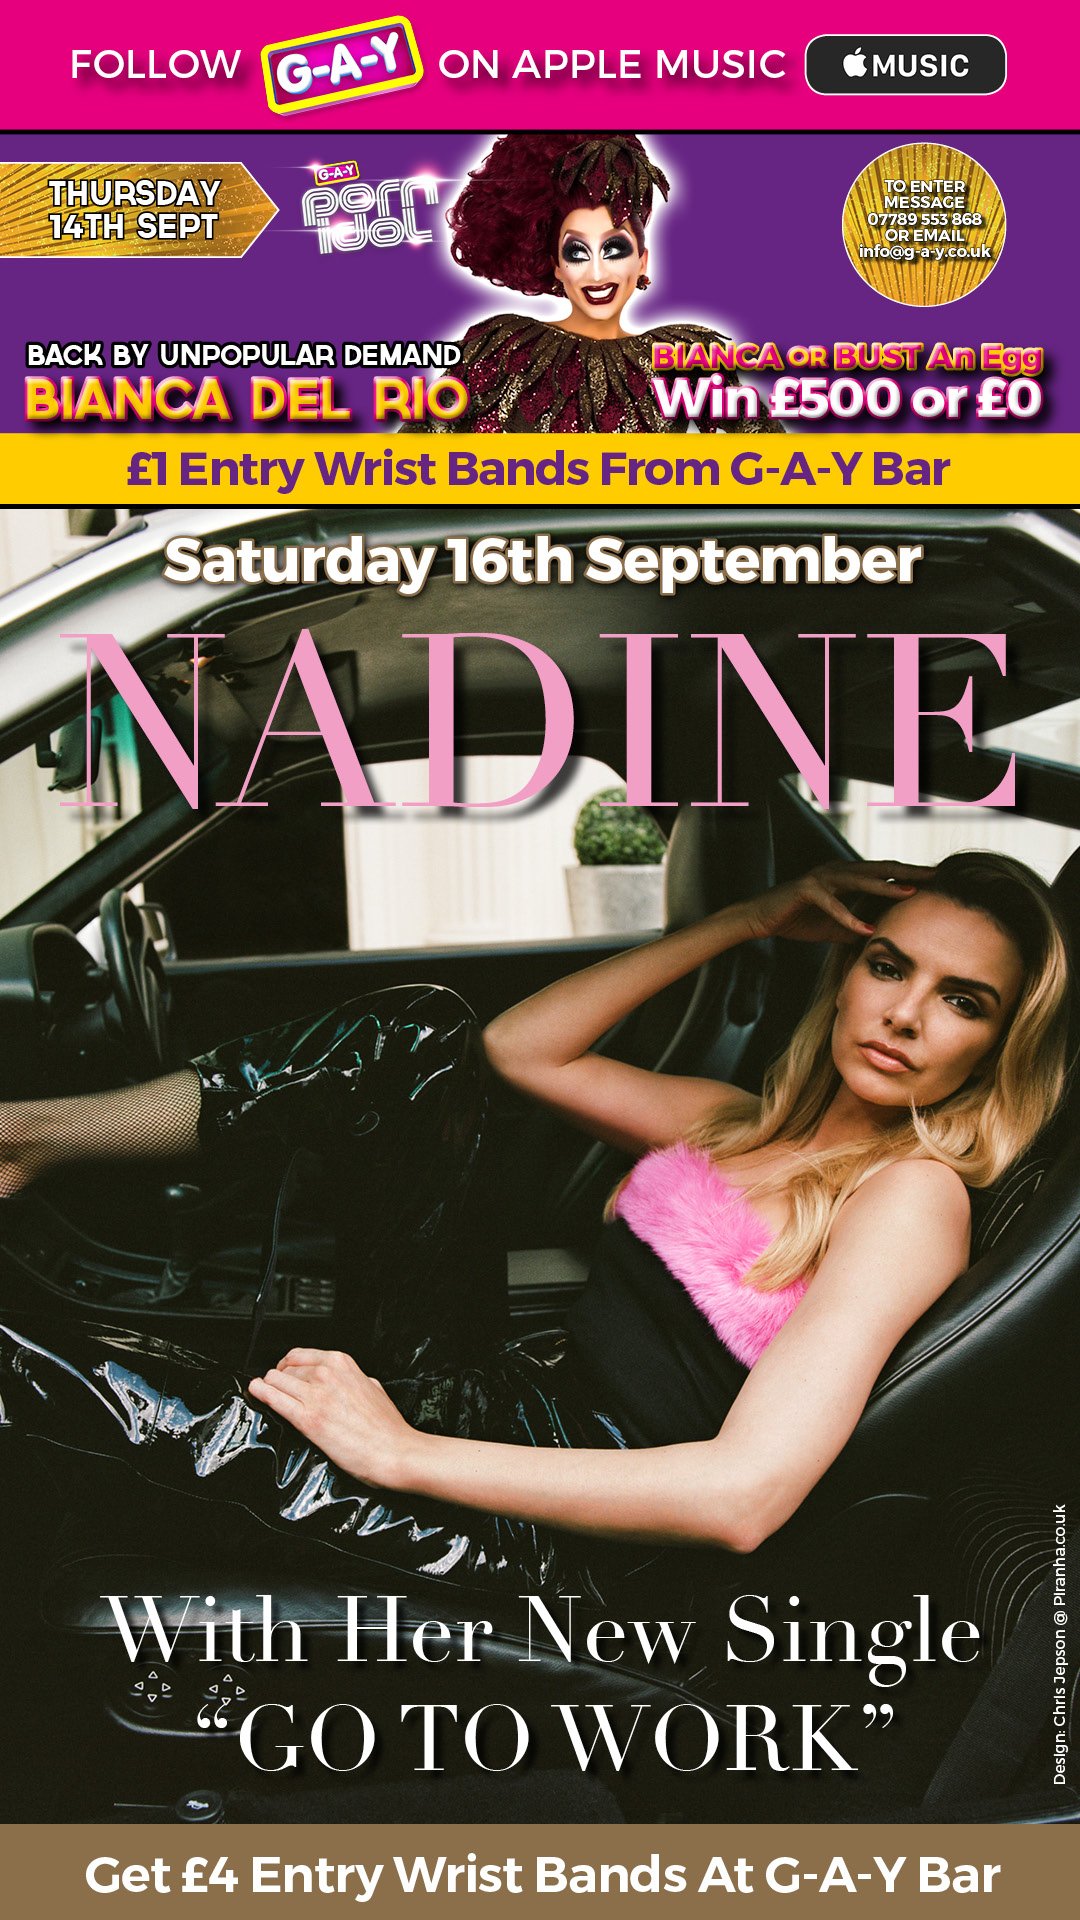 Nadine Coyle >> Fool For Love - Página 4 DJDZd8-W4AAt5dk